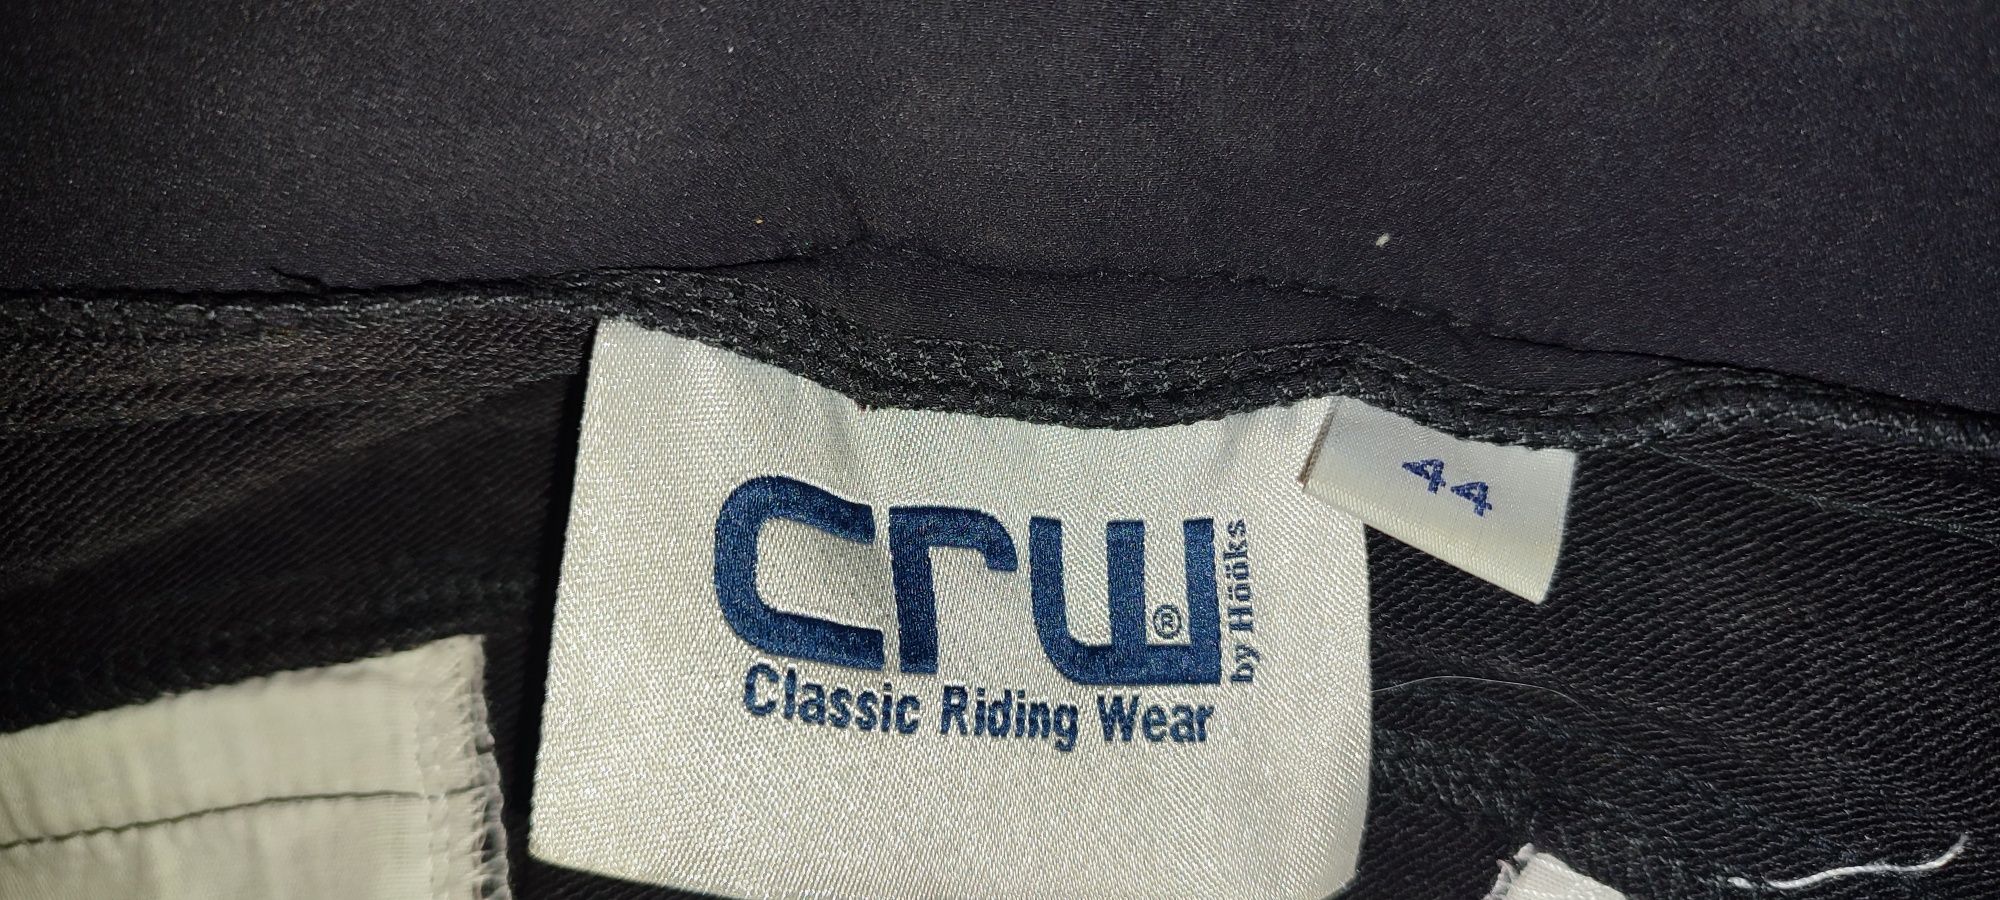 Штаны для верховой езды конного спорта Classic Riding Wear